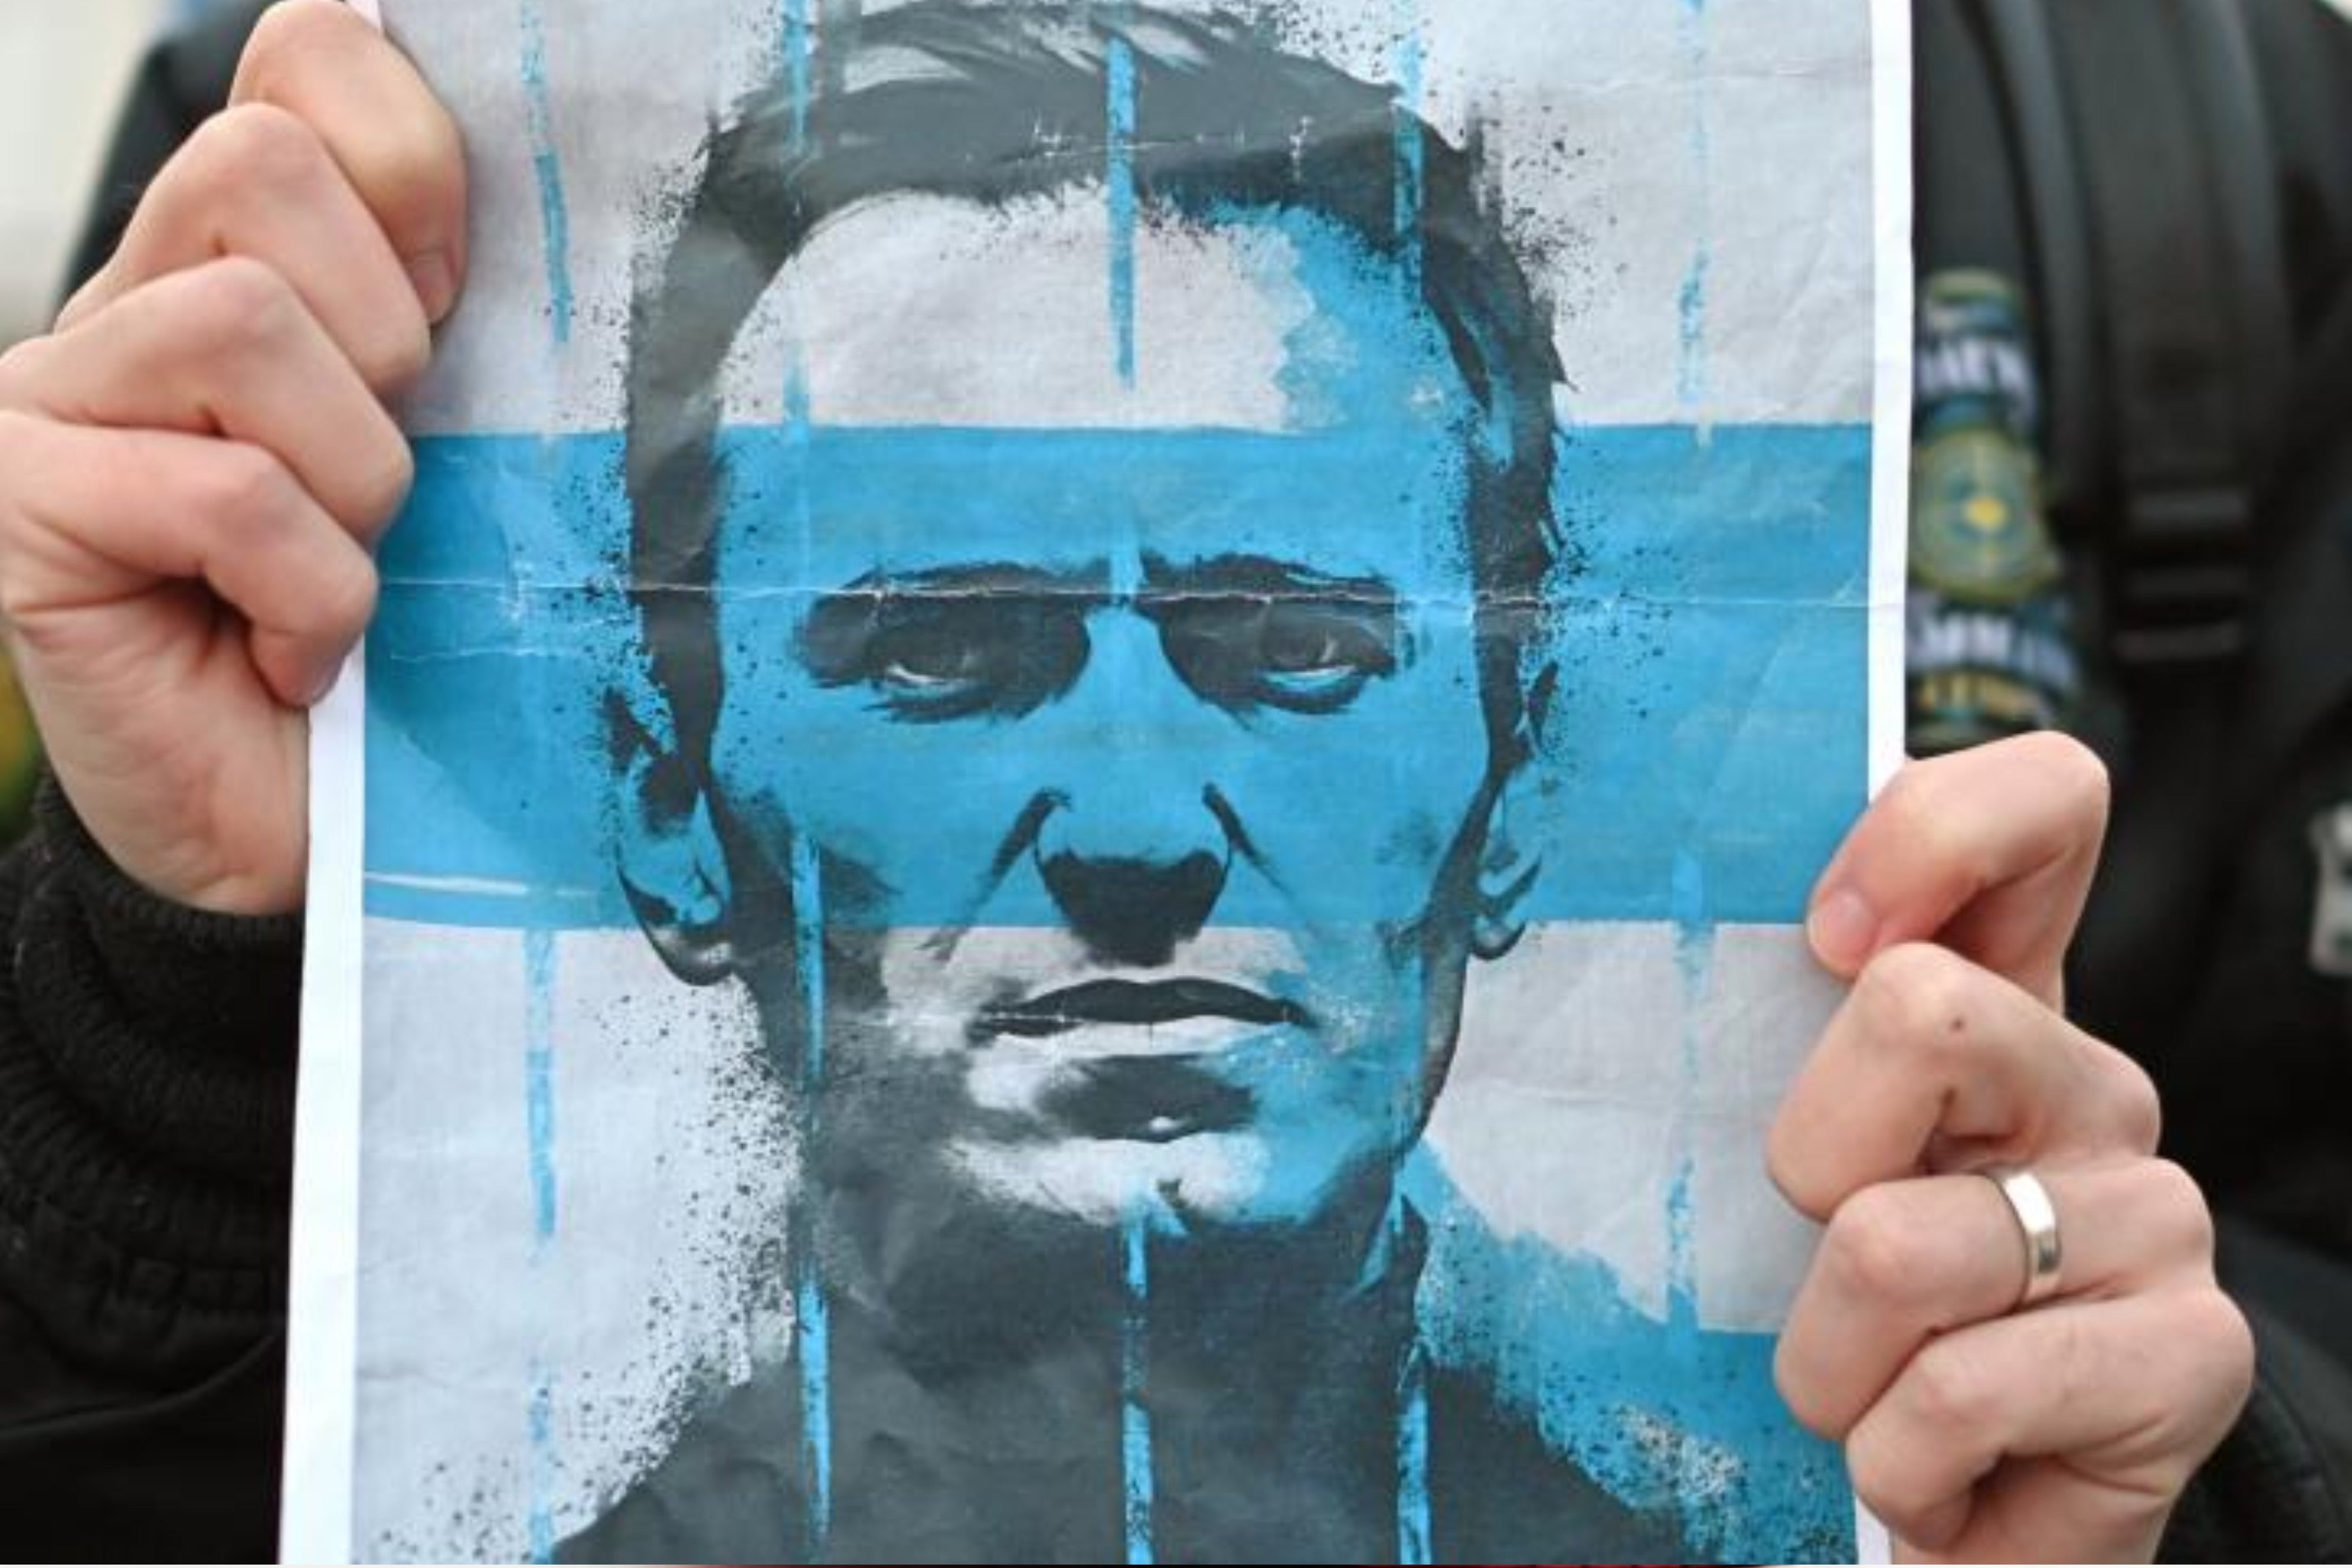 Death of Alexei Navalny: Washington to impose 